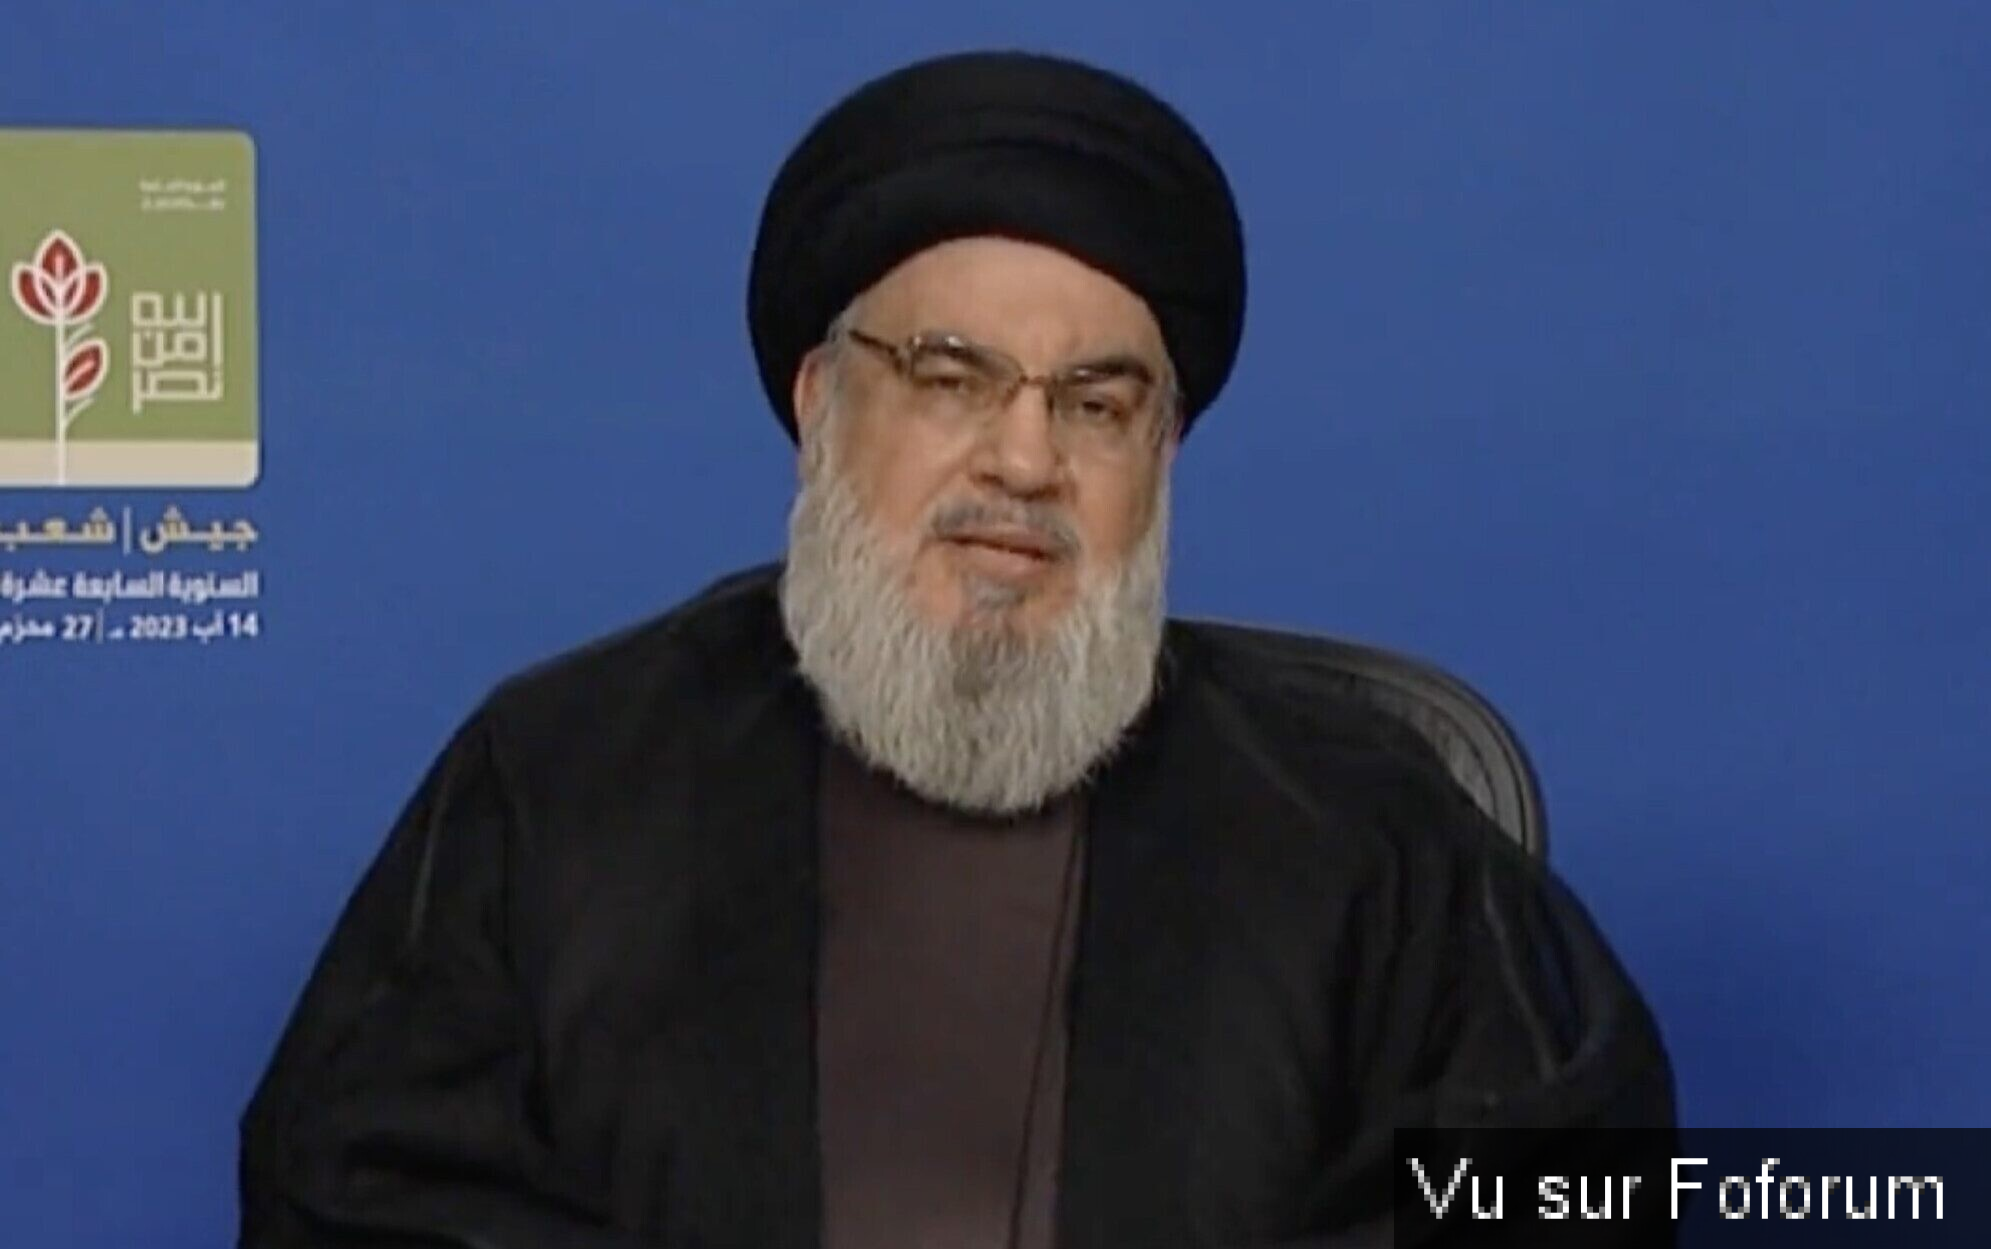 Le chef du hezbollah va faire une déclaration dans les prochaines heures